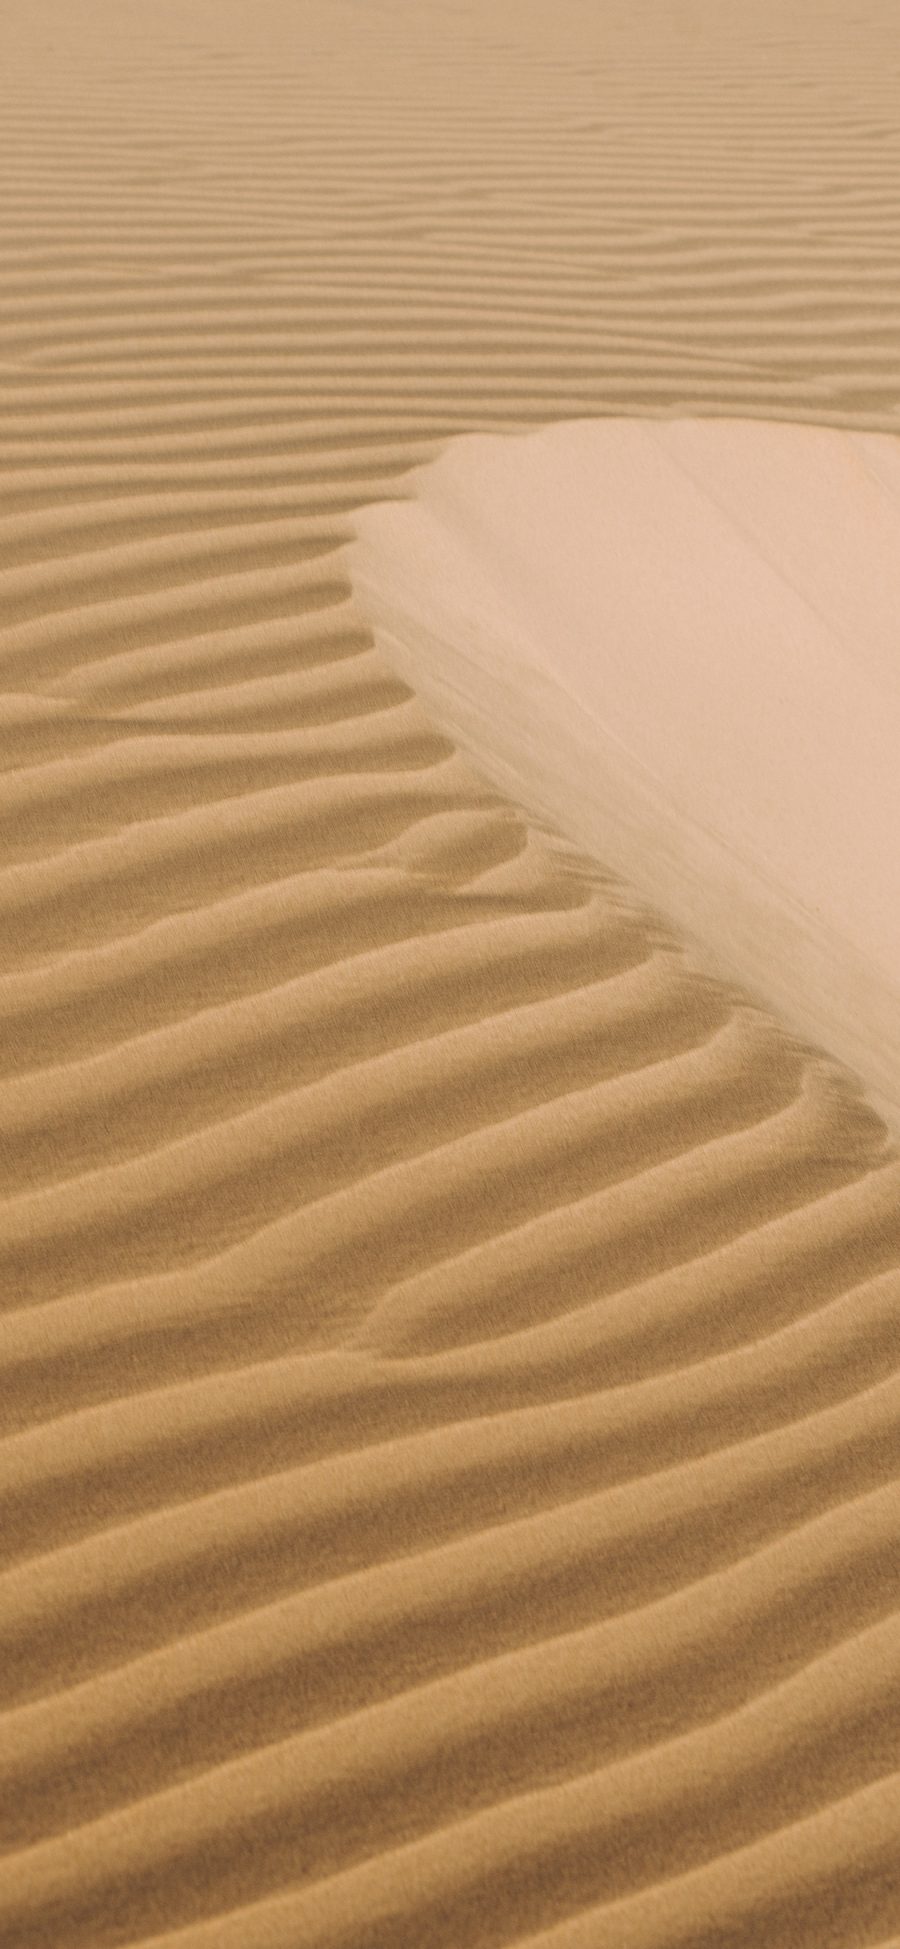 [2436×1125]沙漠 塌陷 纹理 地貌 苹果手机壁纸图片